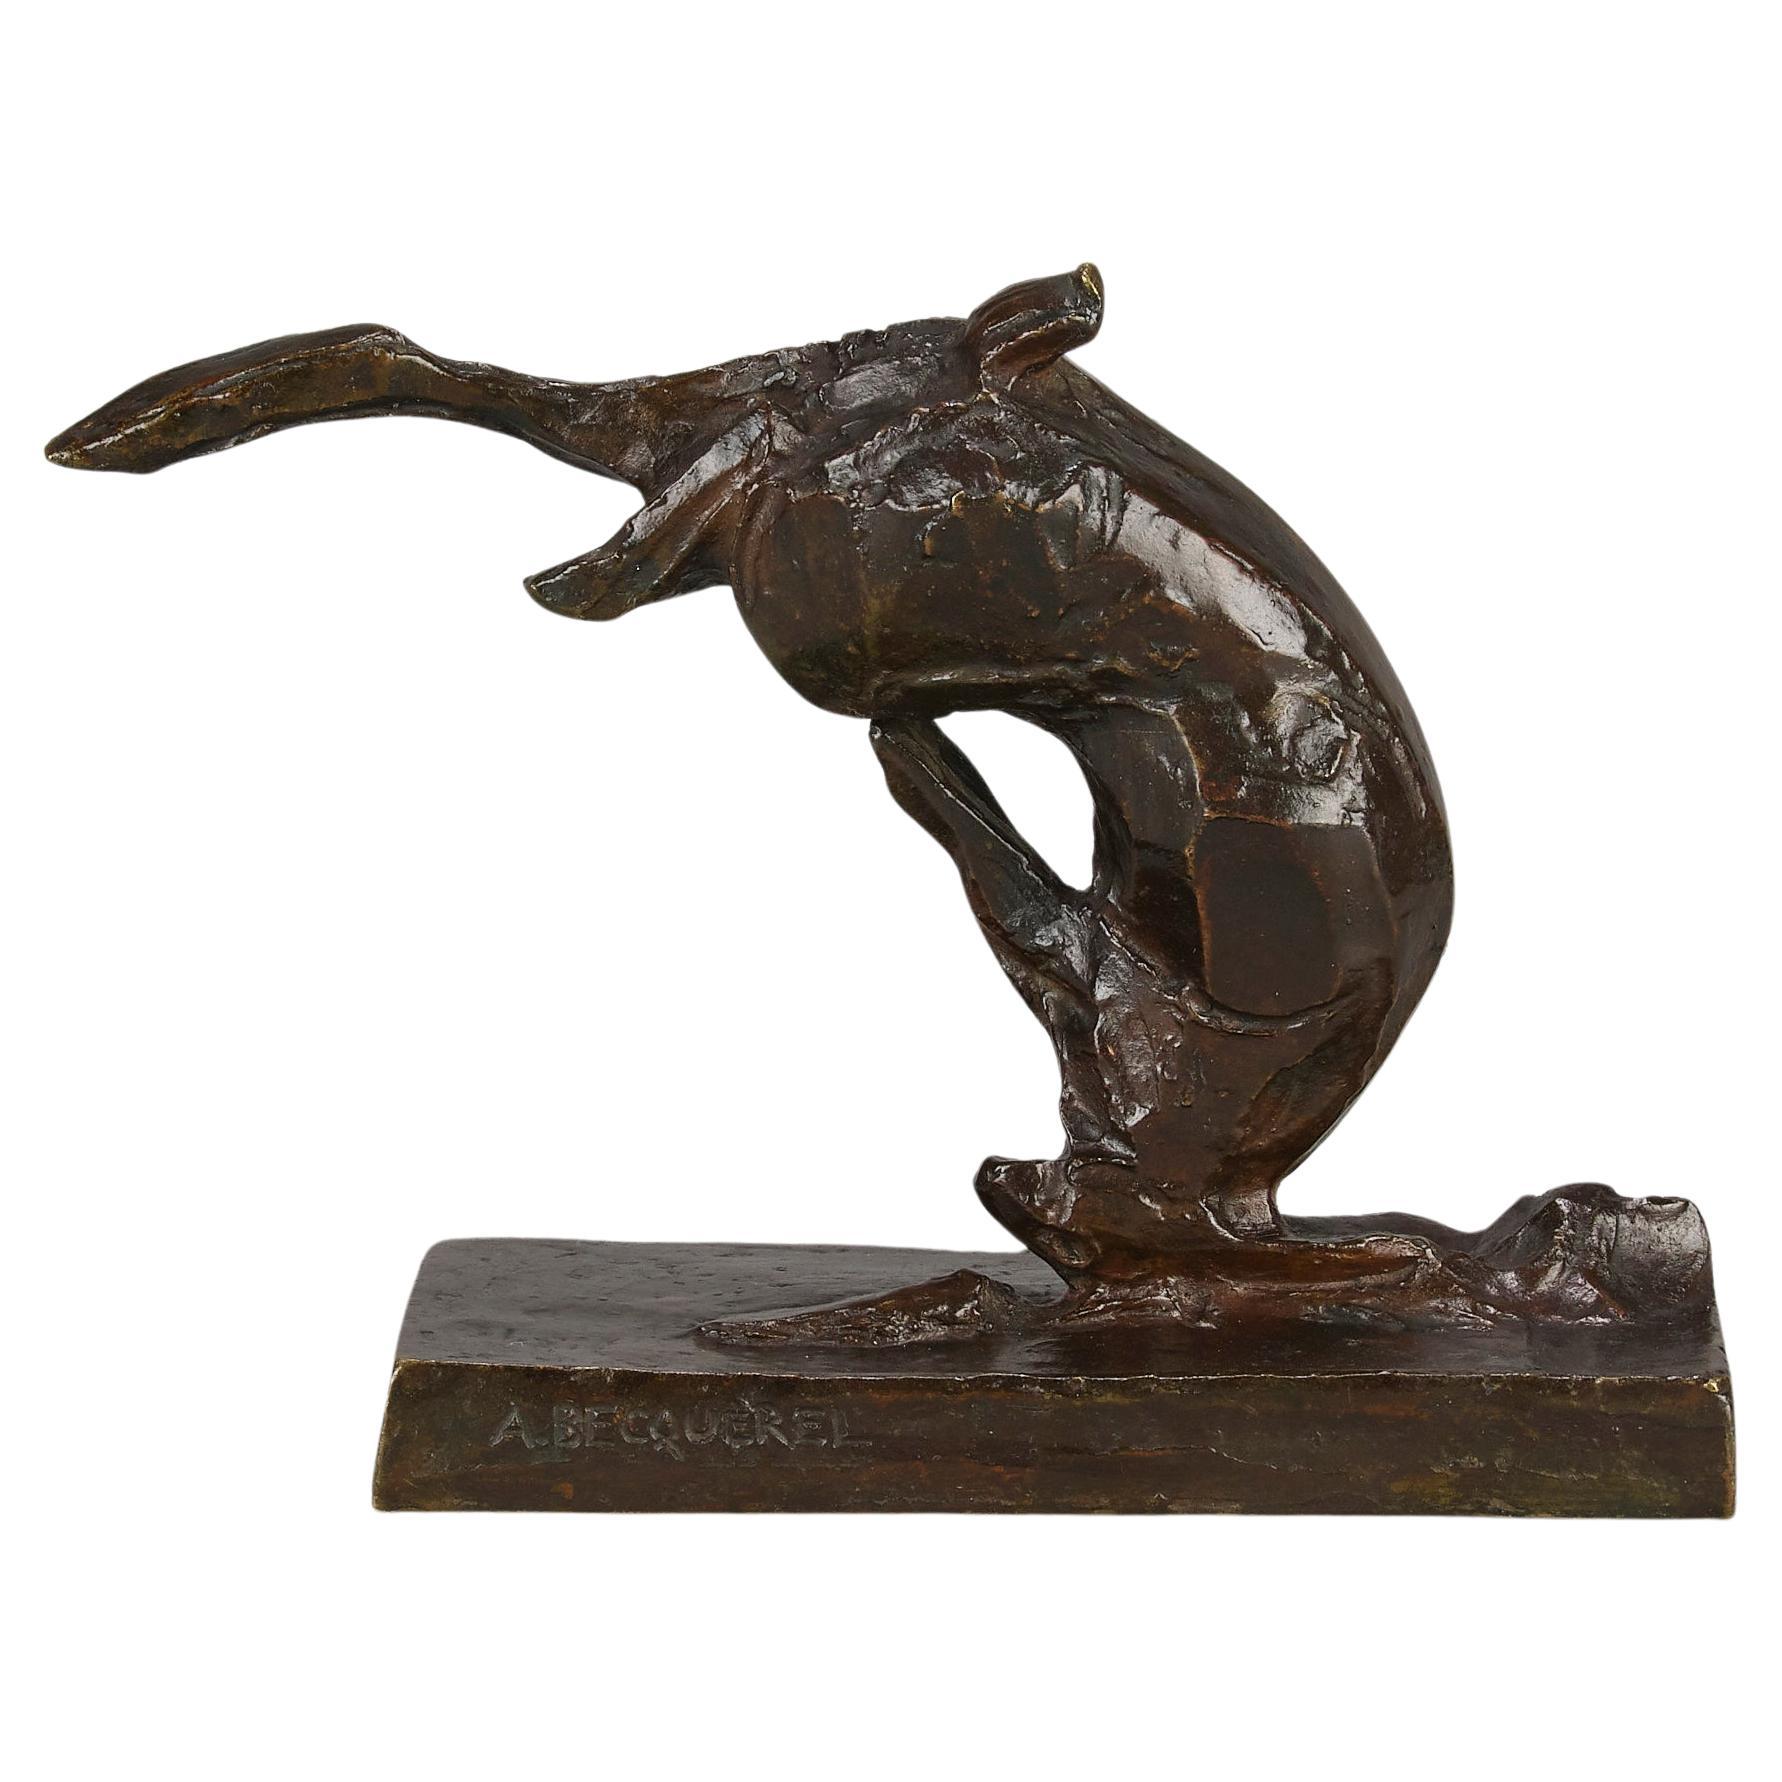 Bronzestudie mit dem Titel „Tumbling Hare“ von Andre Becquerel aus dem frühen 20. Jahrhundert